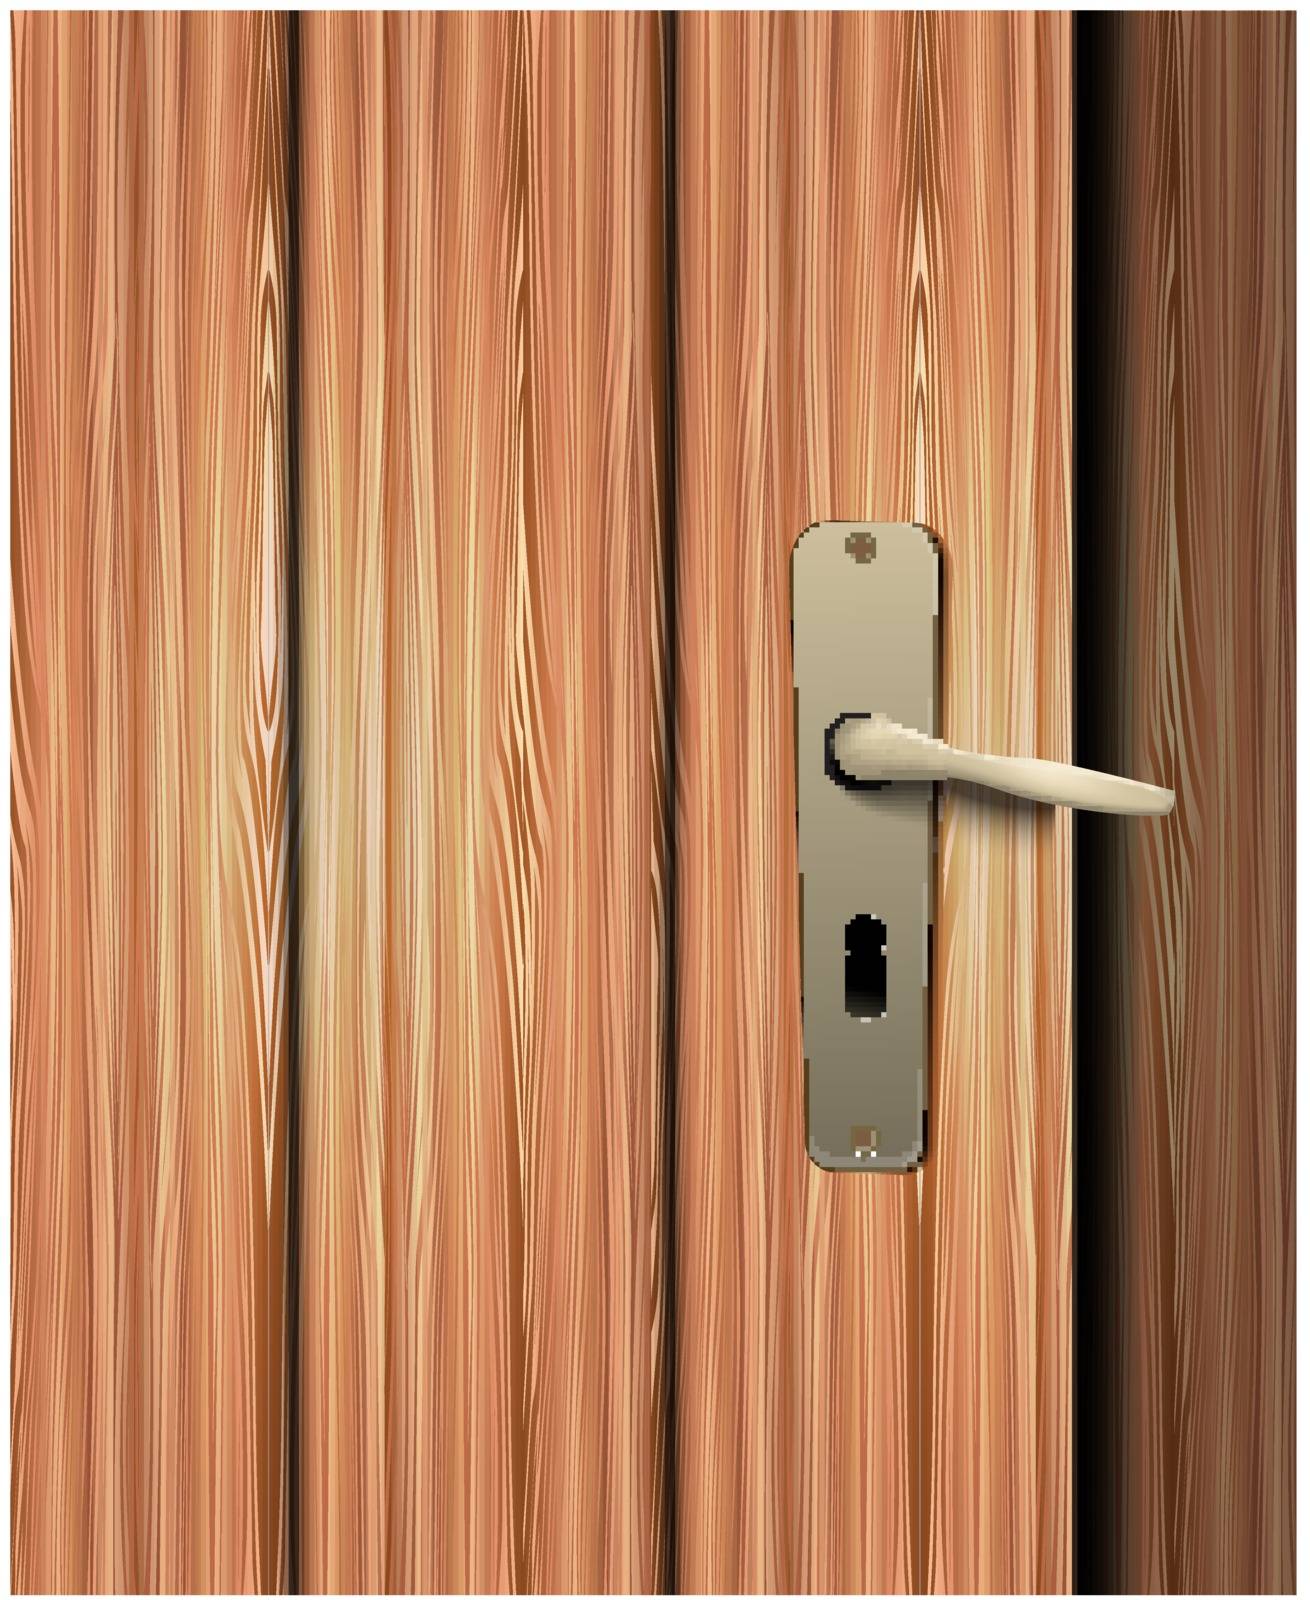 Door handle by robin2